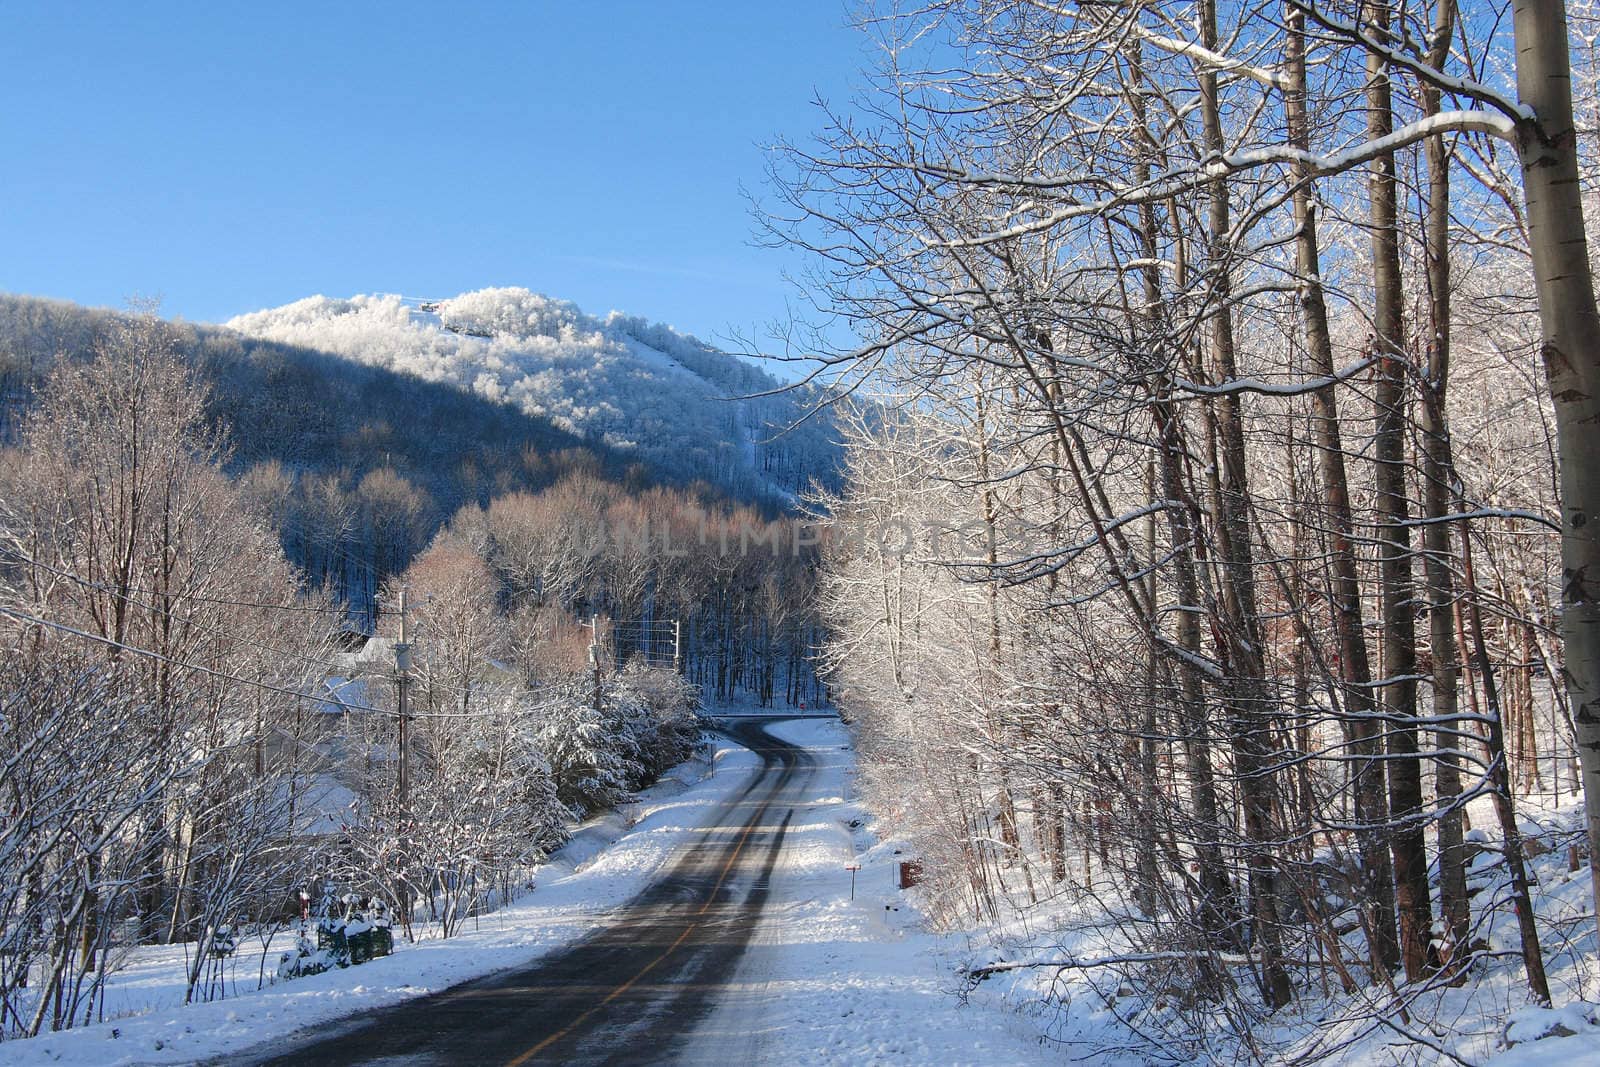 Mountain road in winter by Hbak